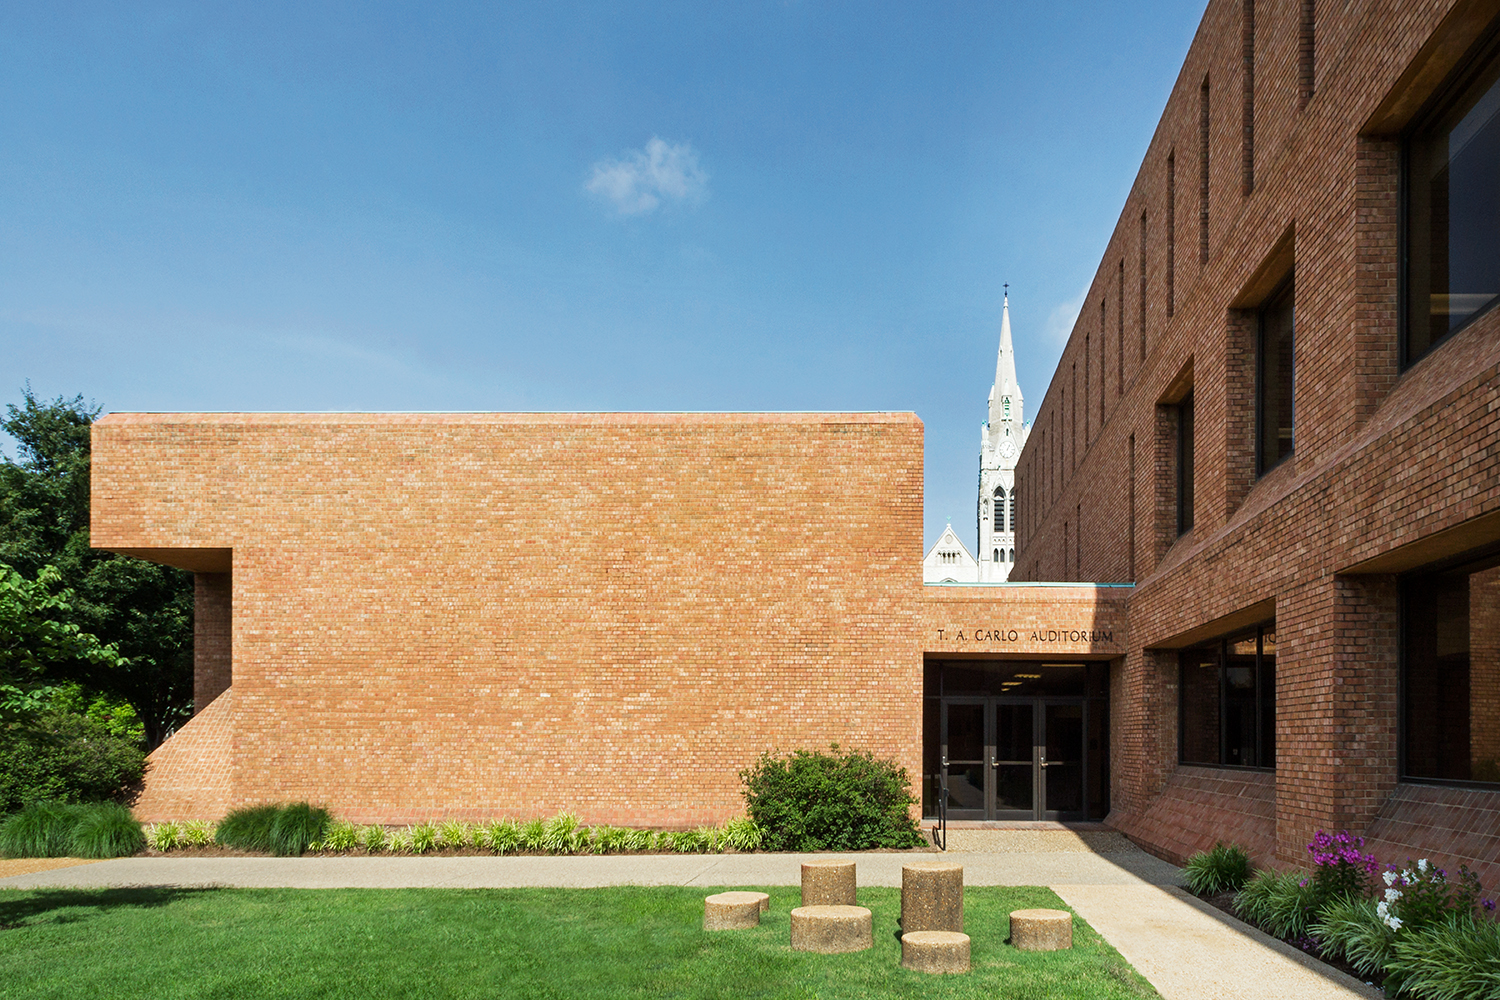 Tegeler Hall / St. Louis University / St. Louis MO / Smith & Entzeroth: 